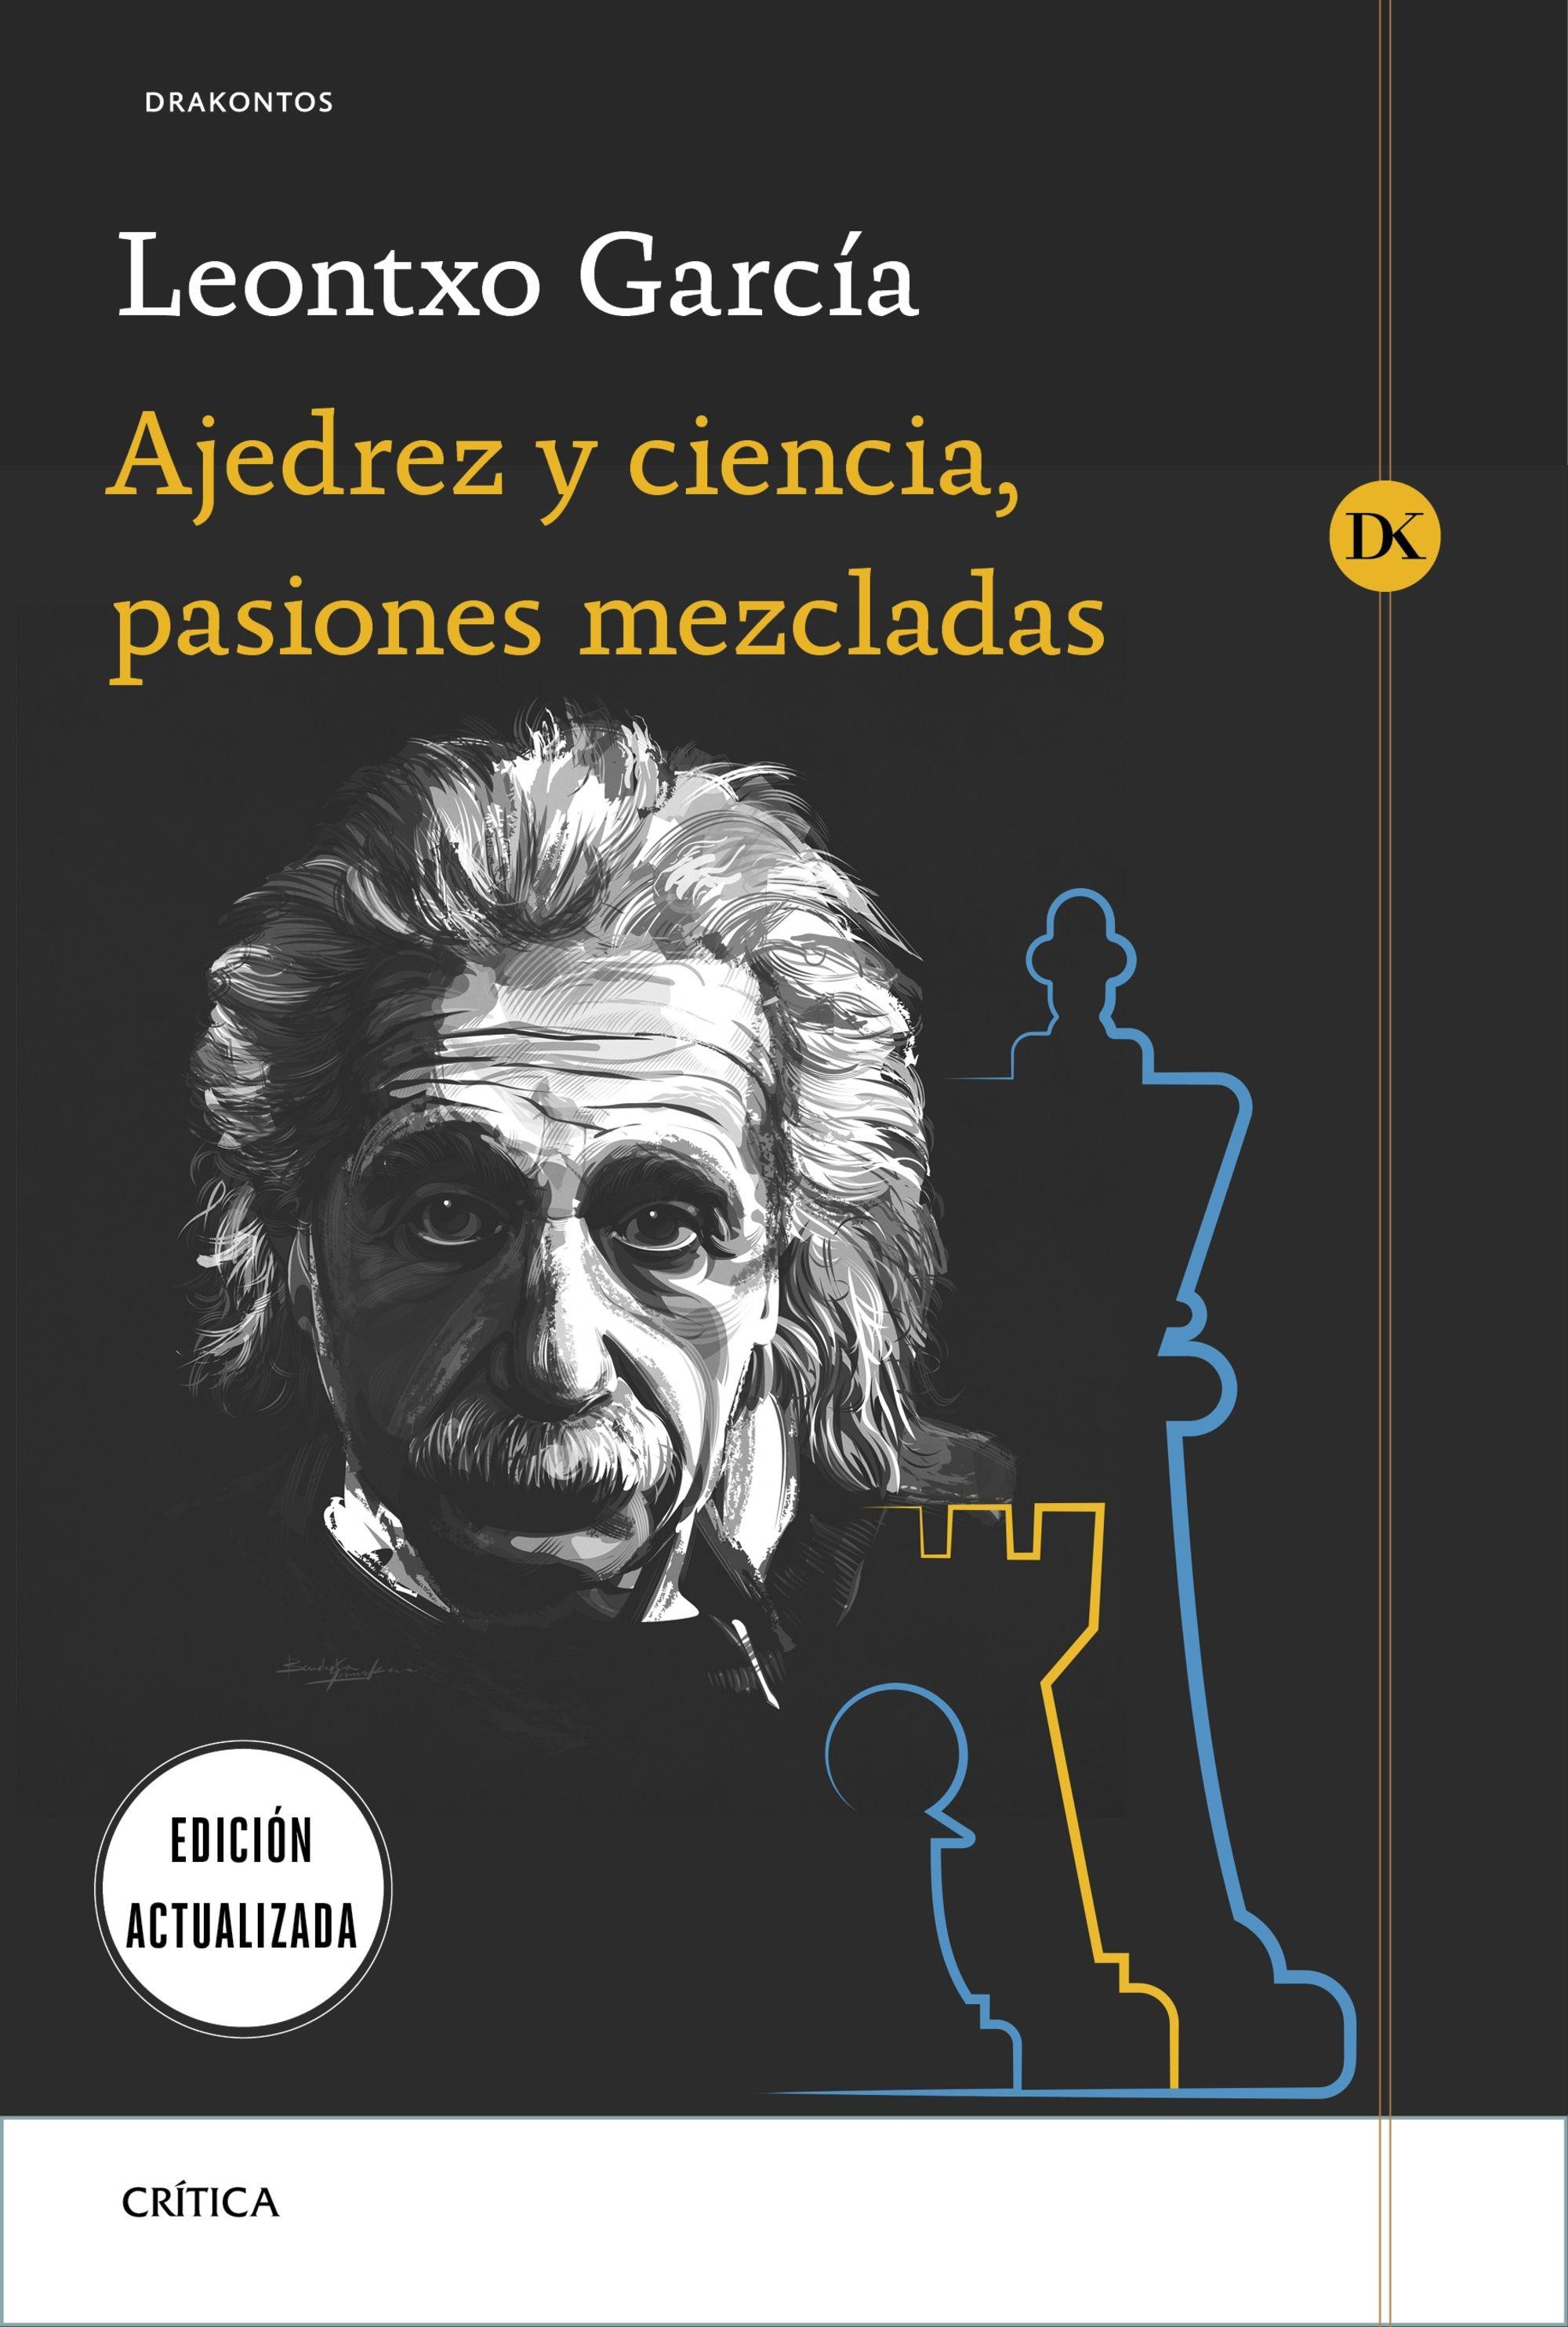 Ajedrez y ciencia, pasiones mezcladas "Prólogo de José Antonio Marina"